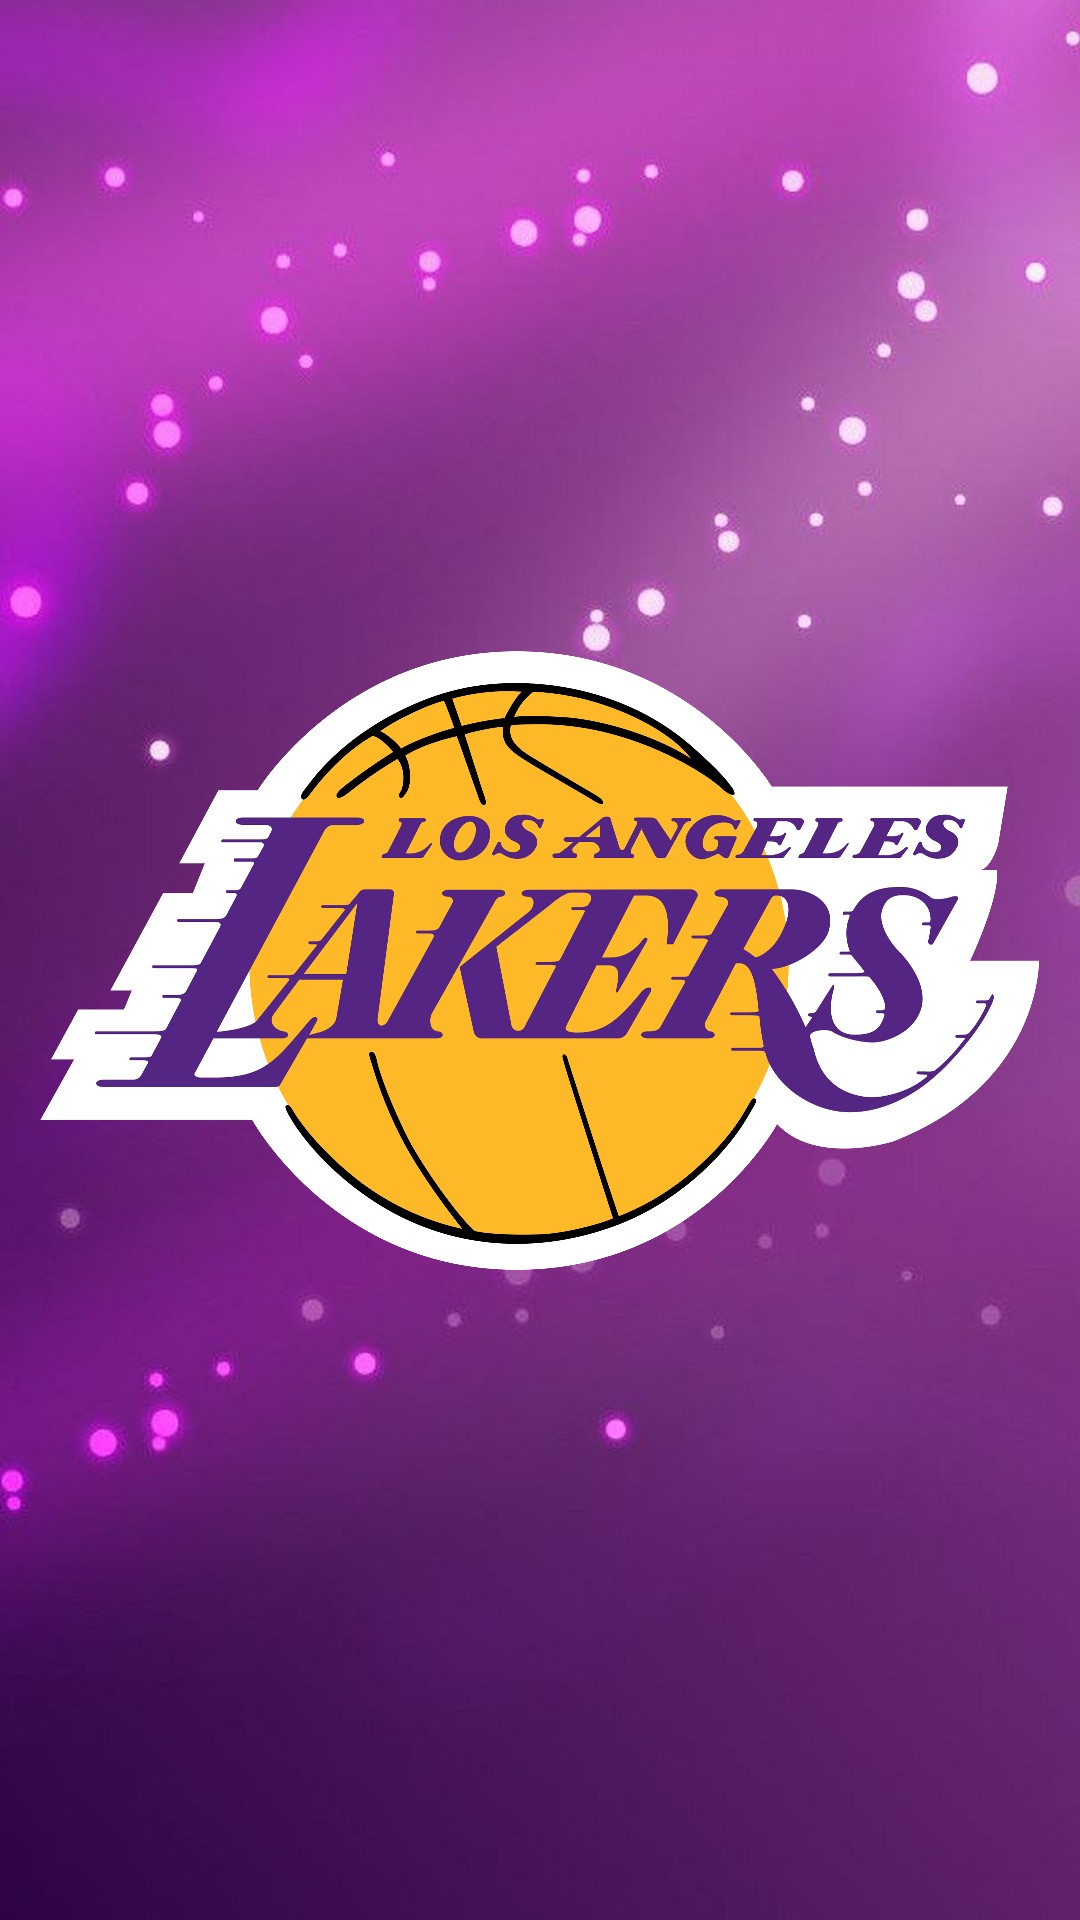 Lakers 2020 Wallpaper